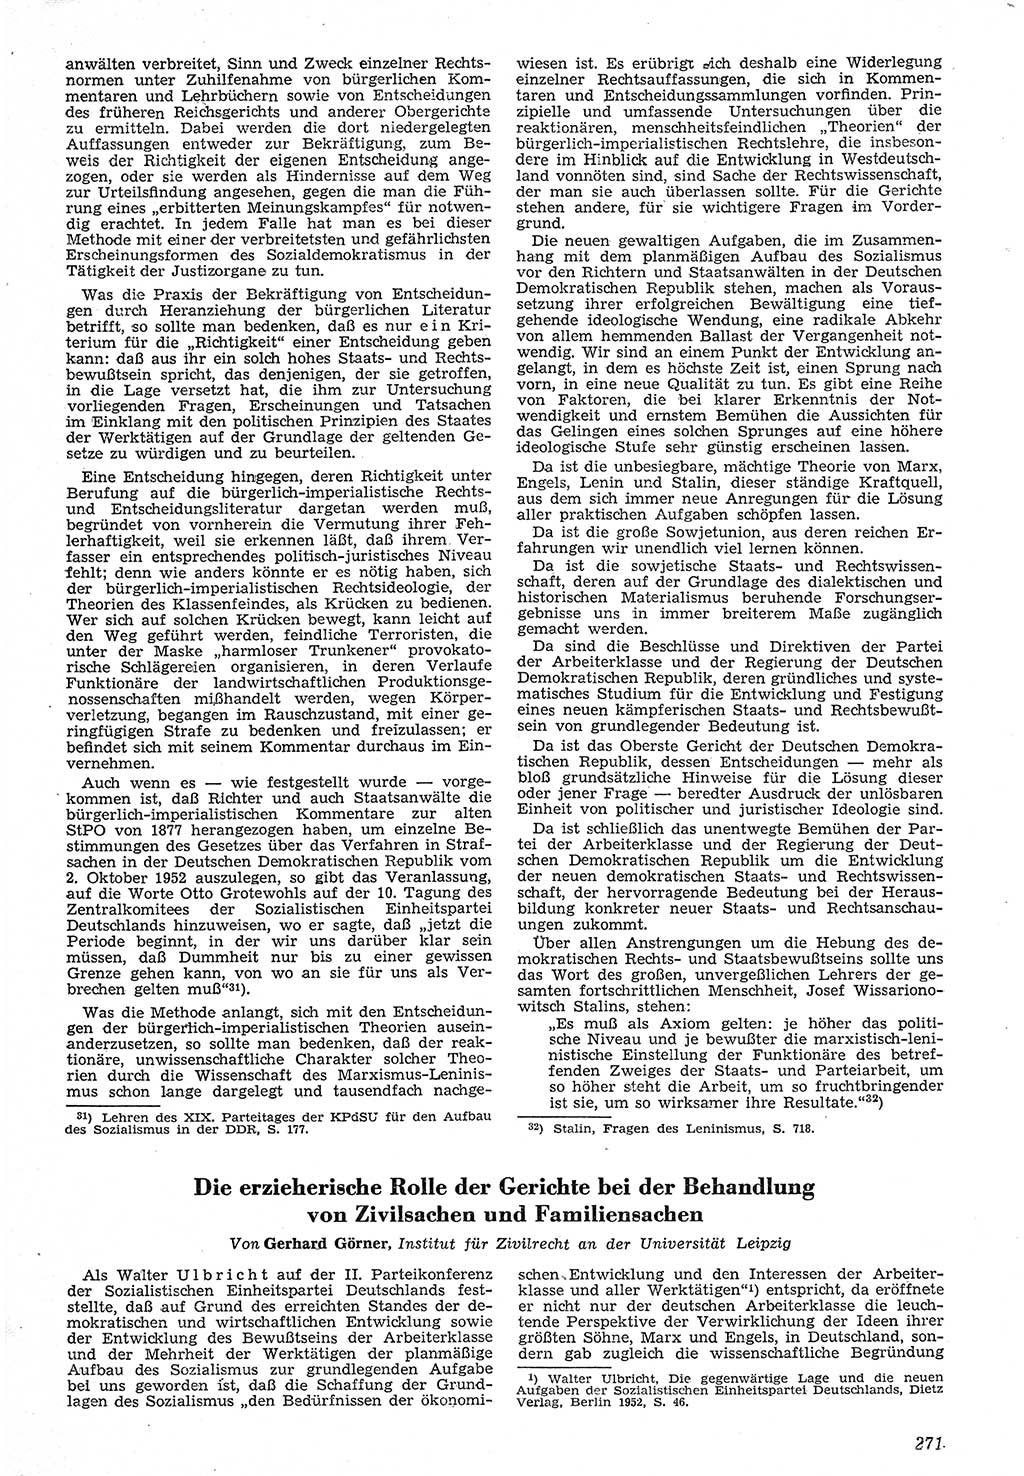 Neue Justiz (NJ), Zeitschrift für Recht und Rechtswissenschaft [Deutsche Demokratische Republik (DDR)], 7. Jahrgang 1953, Seite 271 (NJ DDR 1953, S. 271)